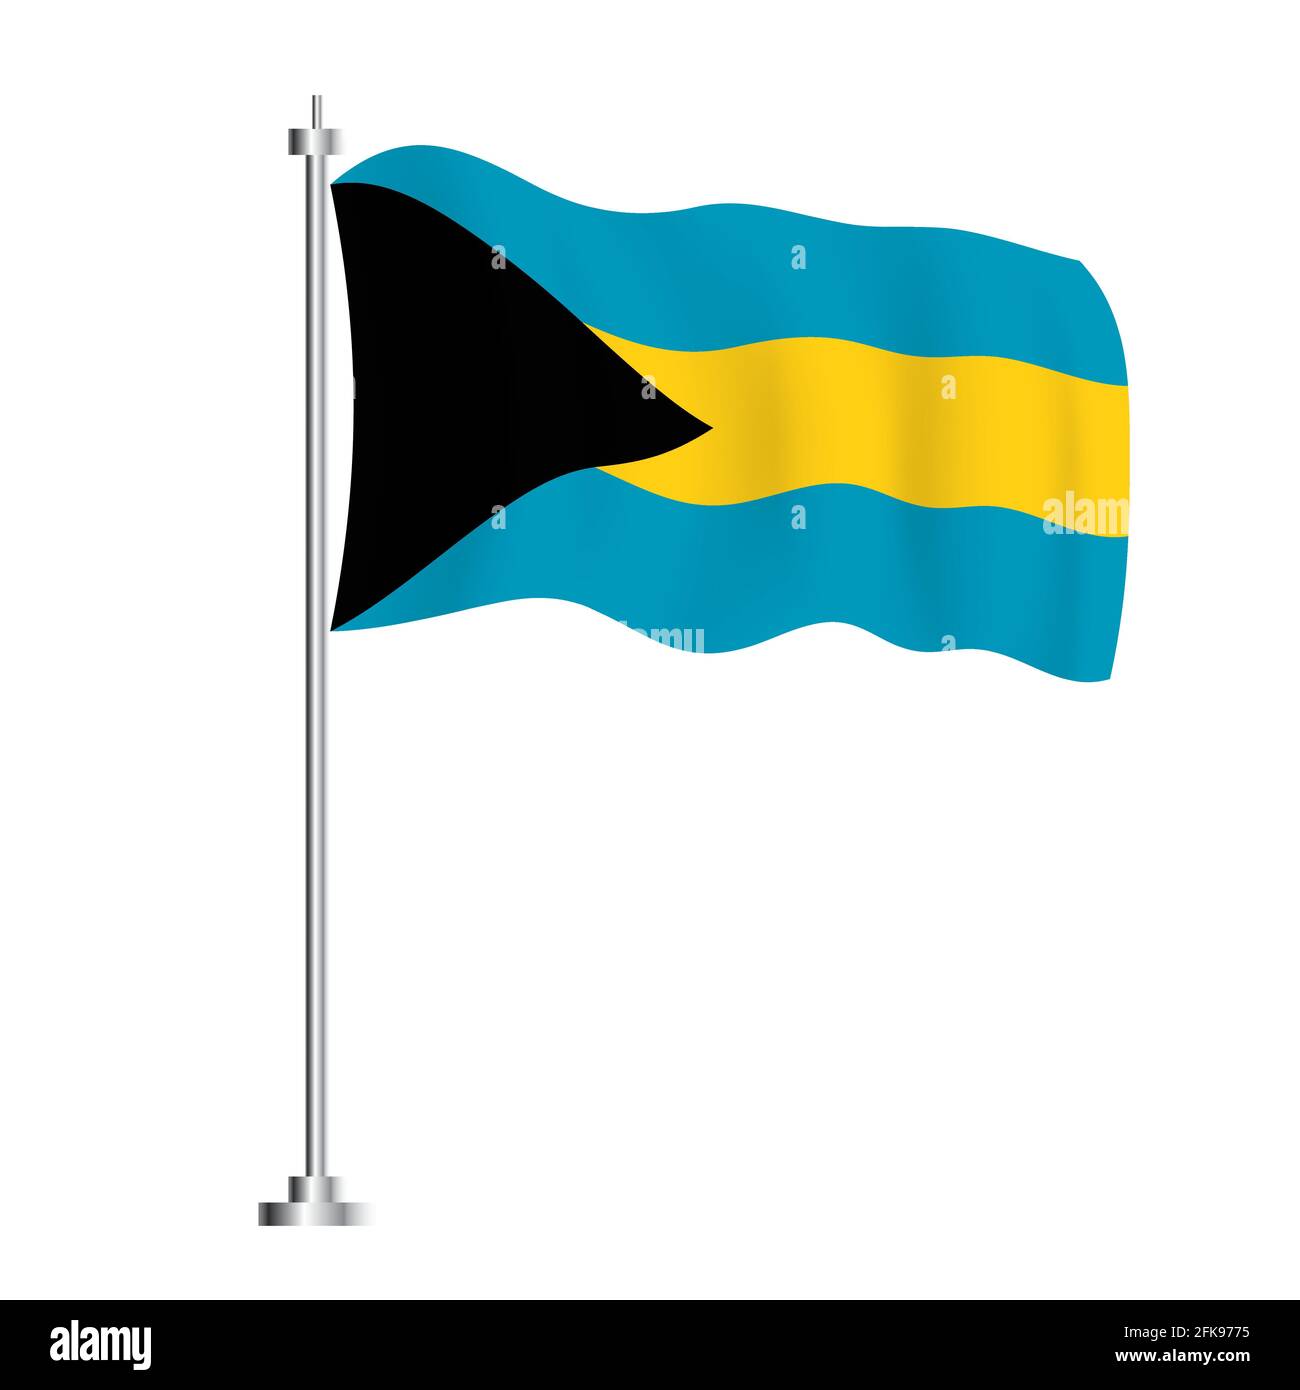 Bandiera delle Bahamas. Bandiera ad onda isolata del Paese delle Bahamas. Illustrazione vettoriale. Giorno dell'indipendenza. Illustrazione Vettoriale